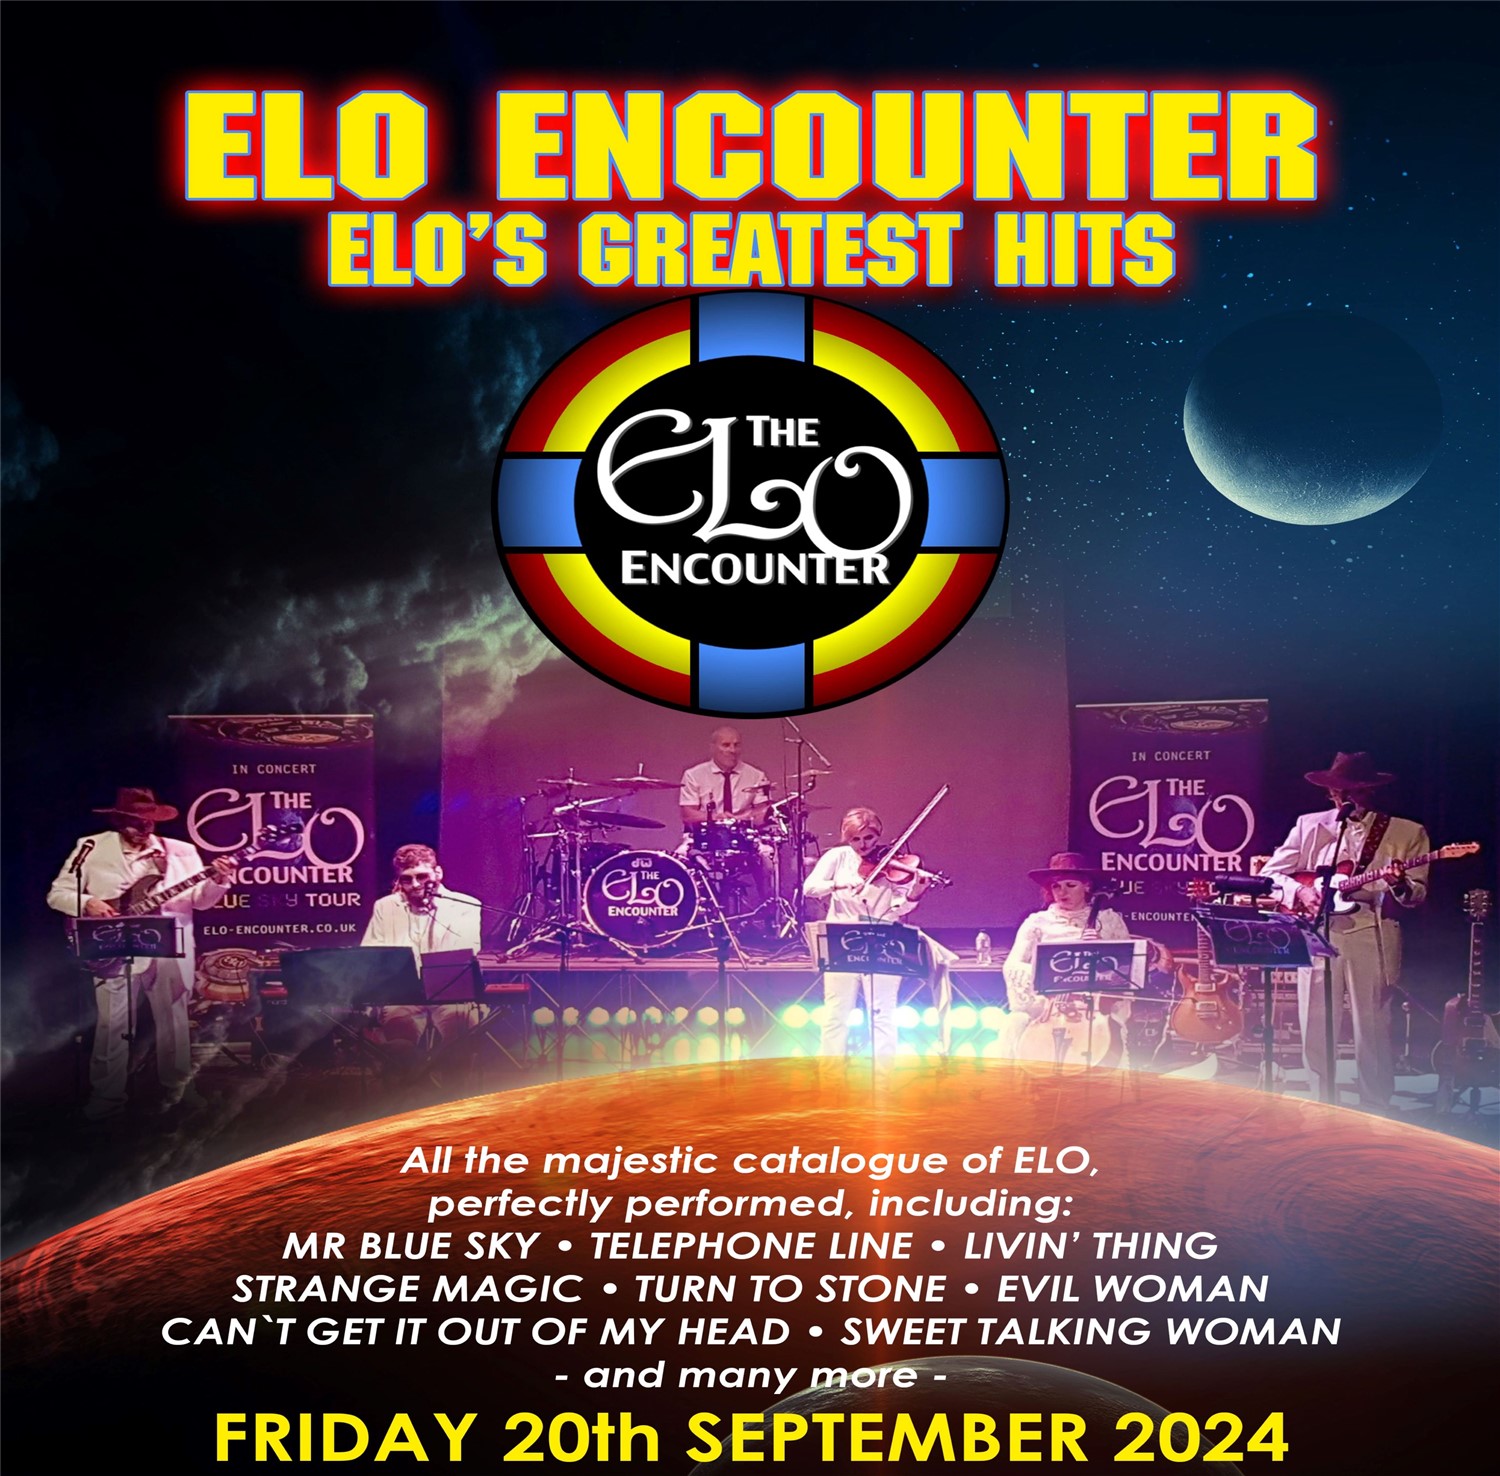 ELO Encounter ELOs Greatest Hits on sept. 20, 19:30@Standard capacity - Choisissez un siège,Achetez des billets et obtenez des informations surSutton Coldfield Town Hall 